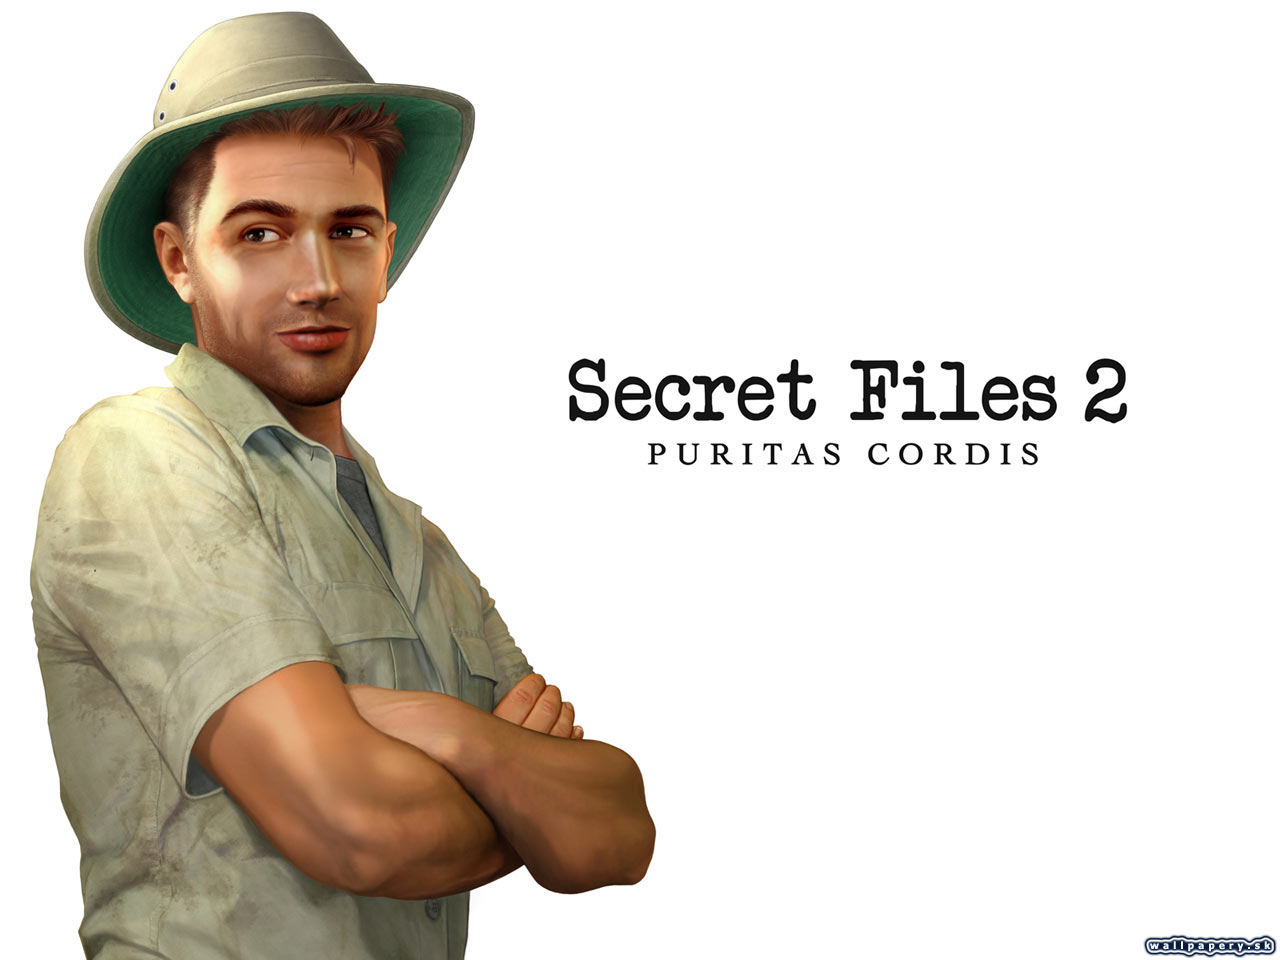 Secret Files 2: Puritas Cordis - wallpaper 4